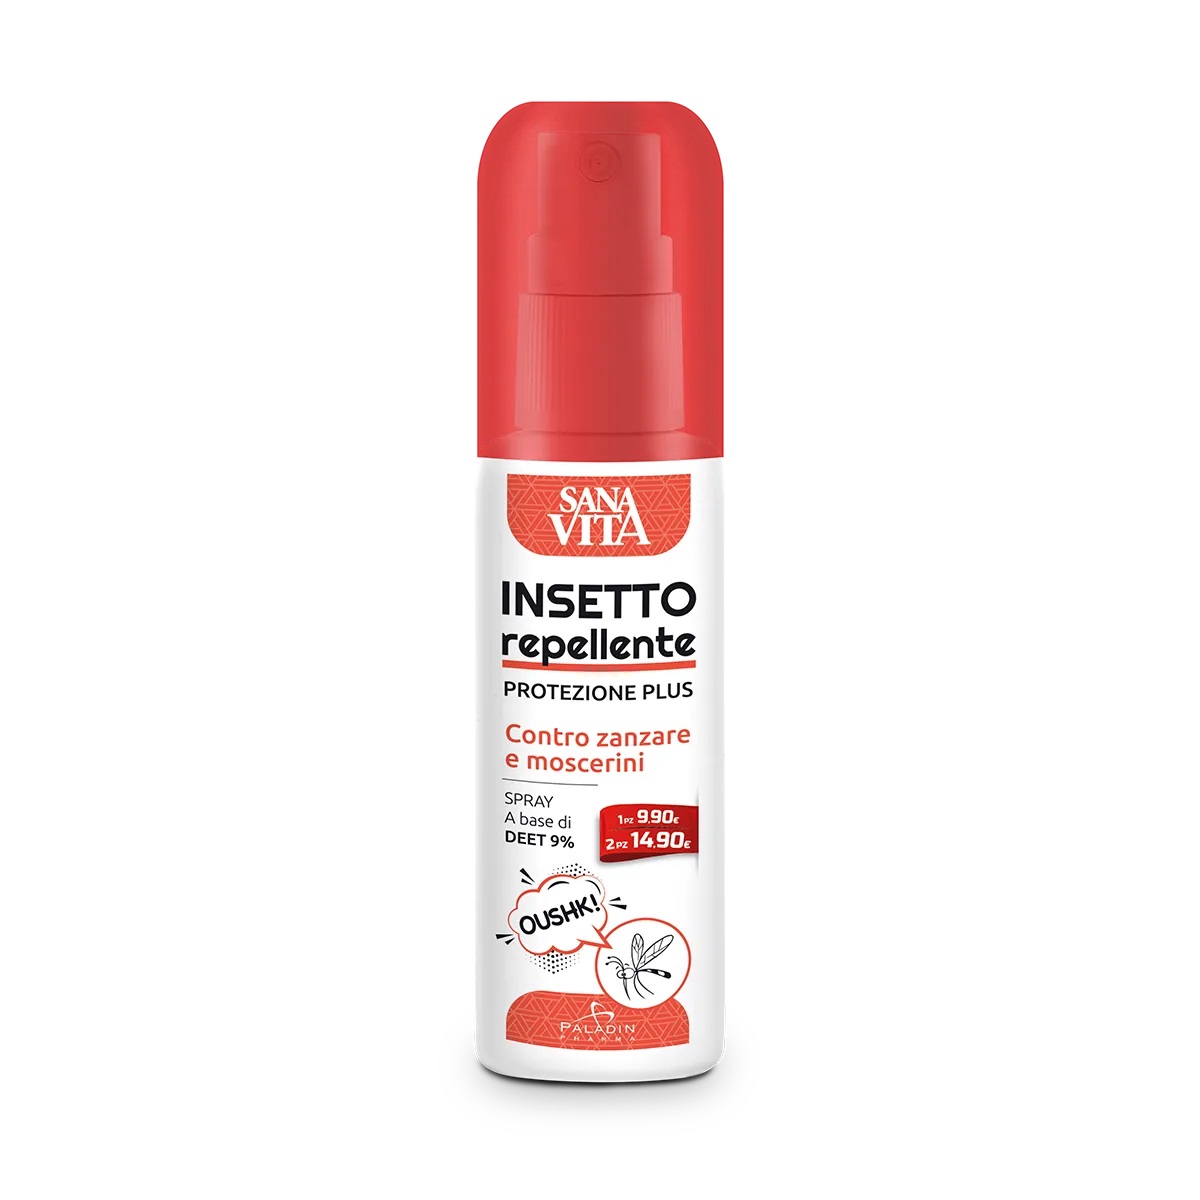 Image of Insetto Repellente Sanavita 100ml